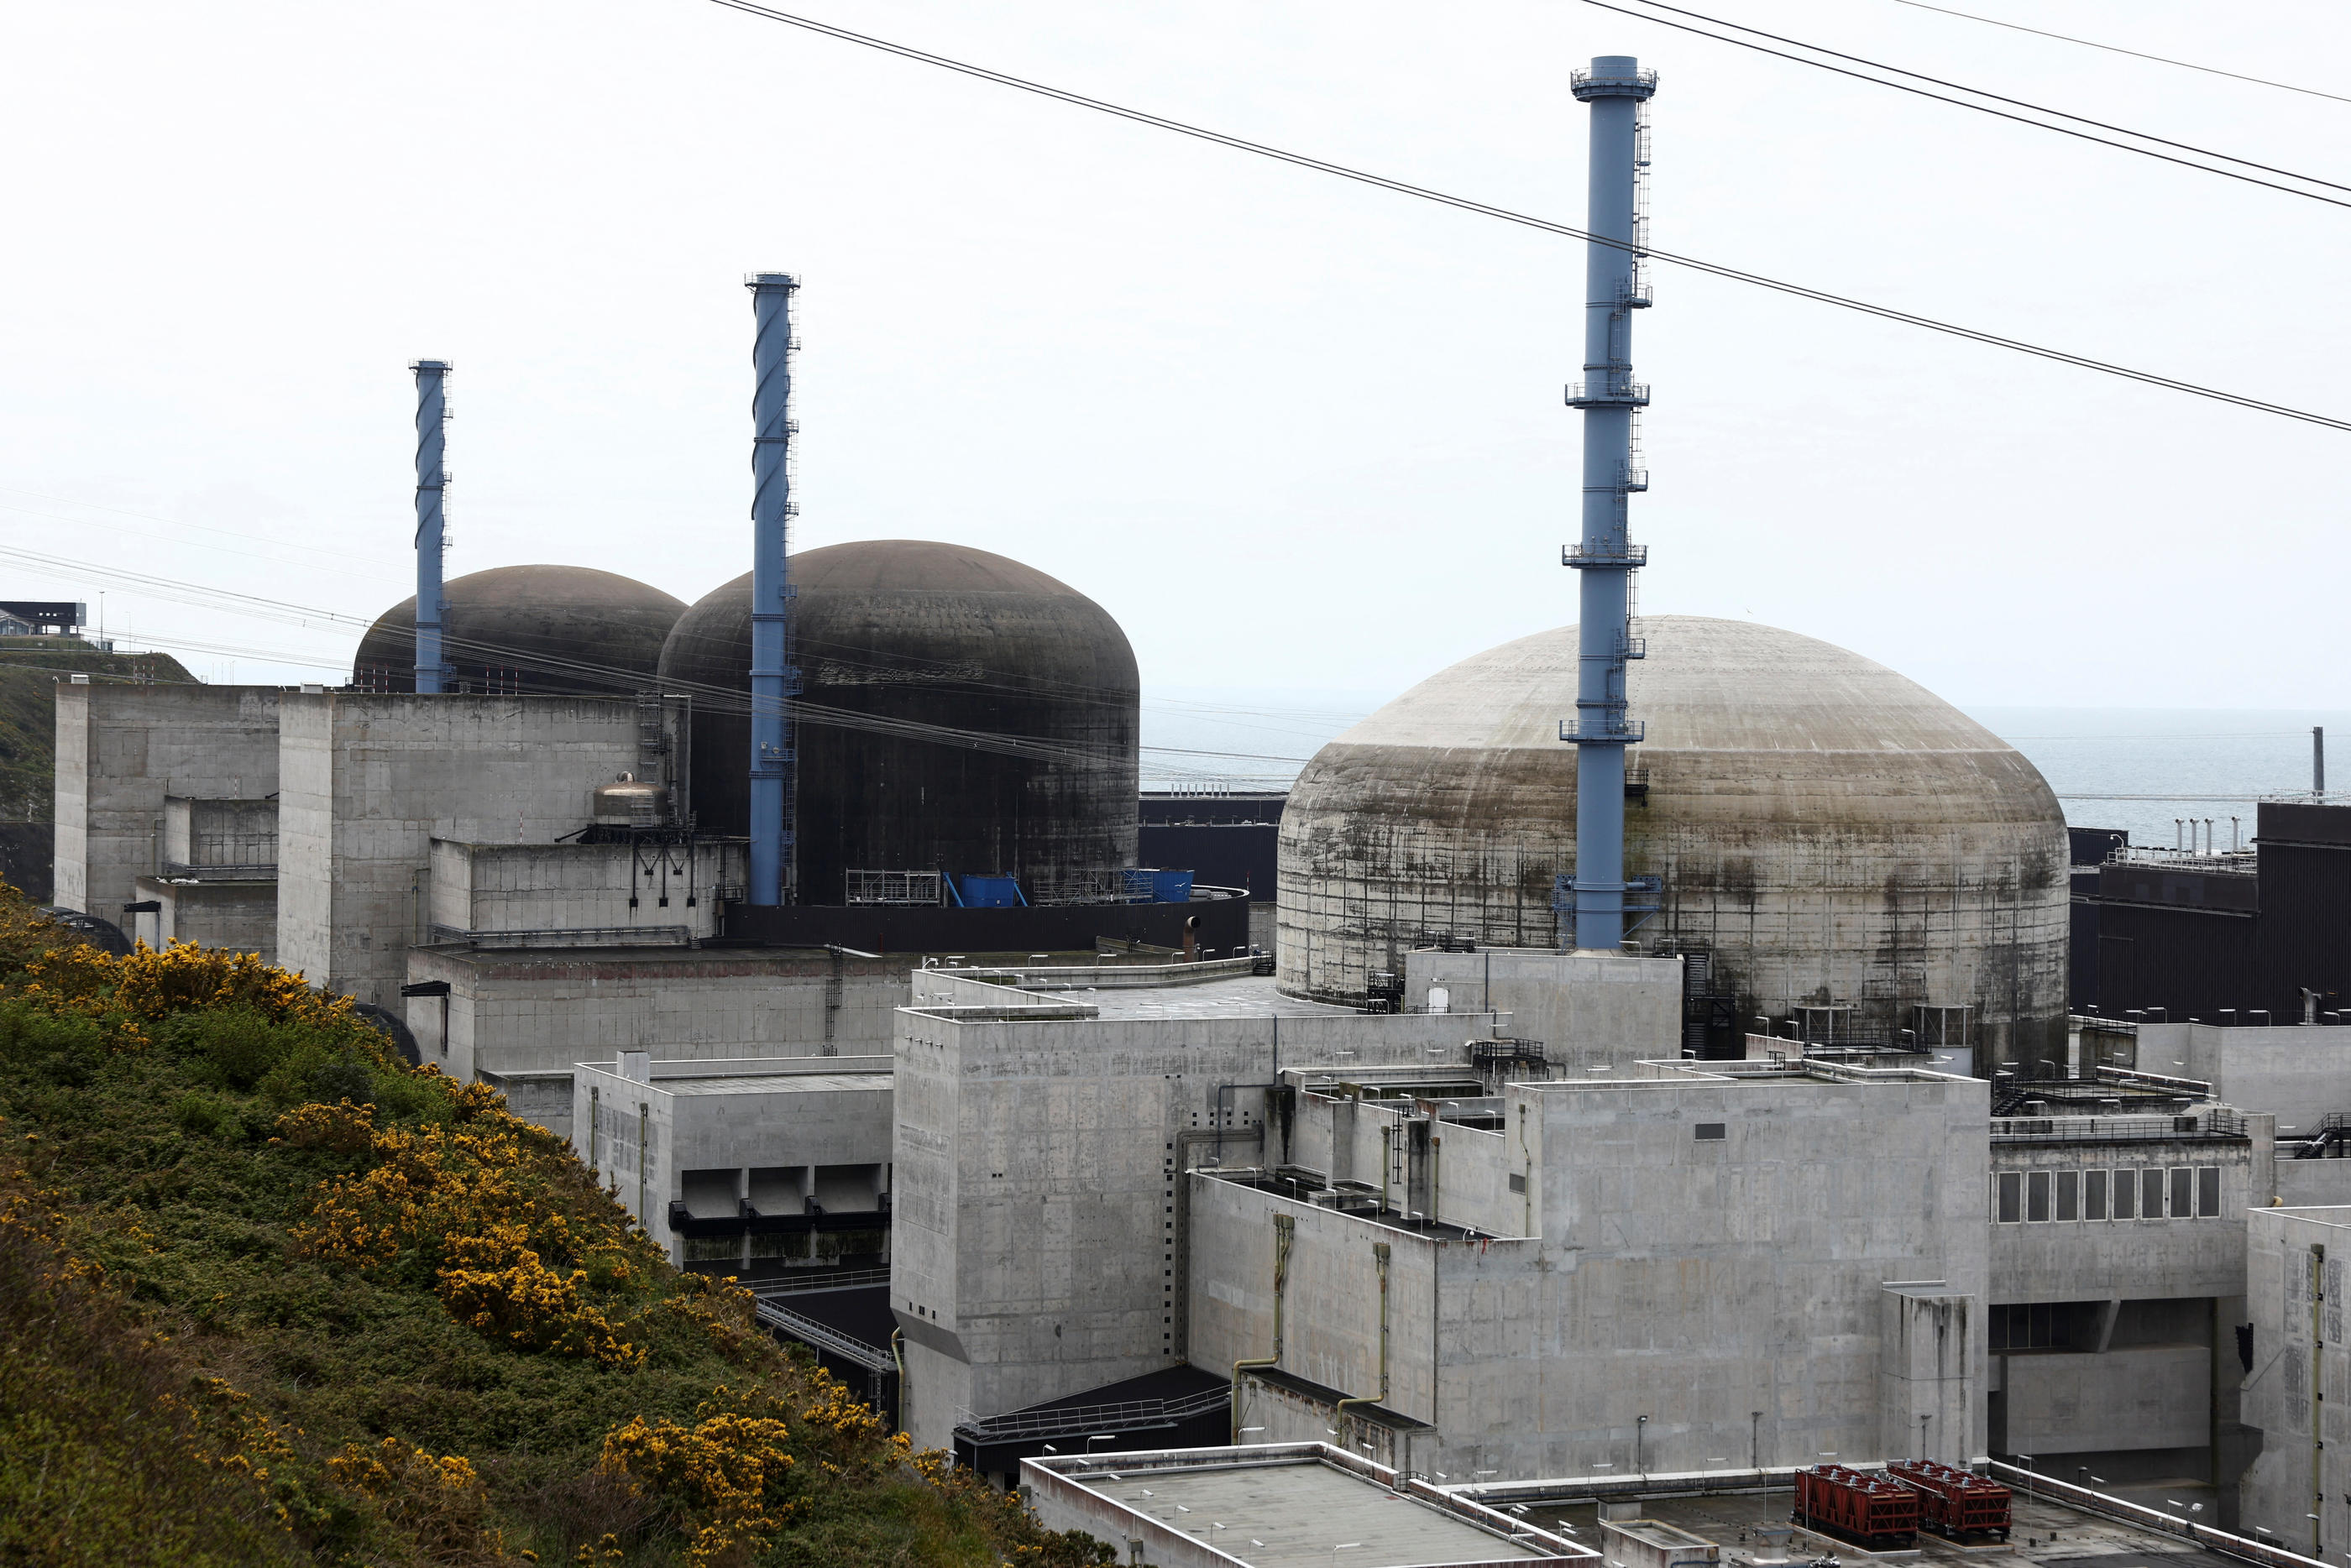 Dix-sept ans après son lancement en 2007, l’EPR de Flamanville (acronyme pour Evolutionary Power Reactor, ou réacteur dit « évolutionnaire »), dans la Manche, espère être raccordé au réseau électrique cet été. REUTERS/Stephanie Lecocq